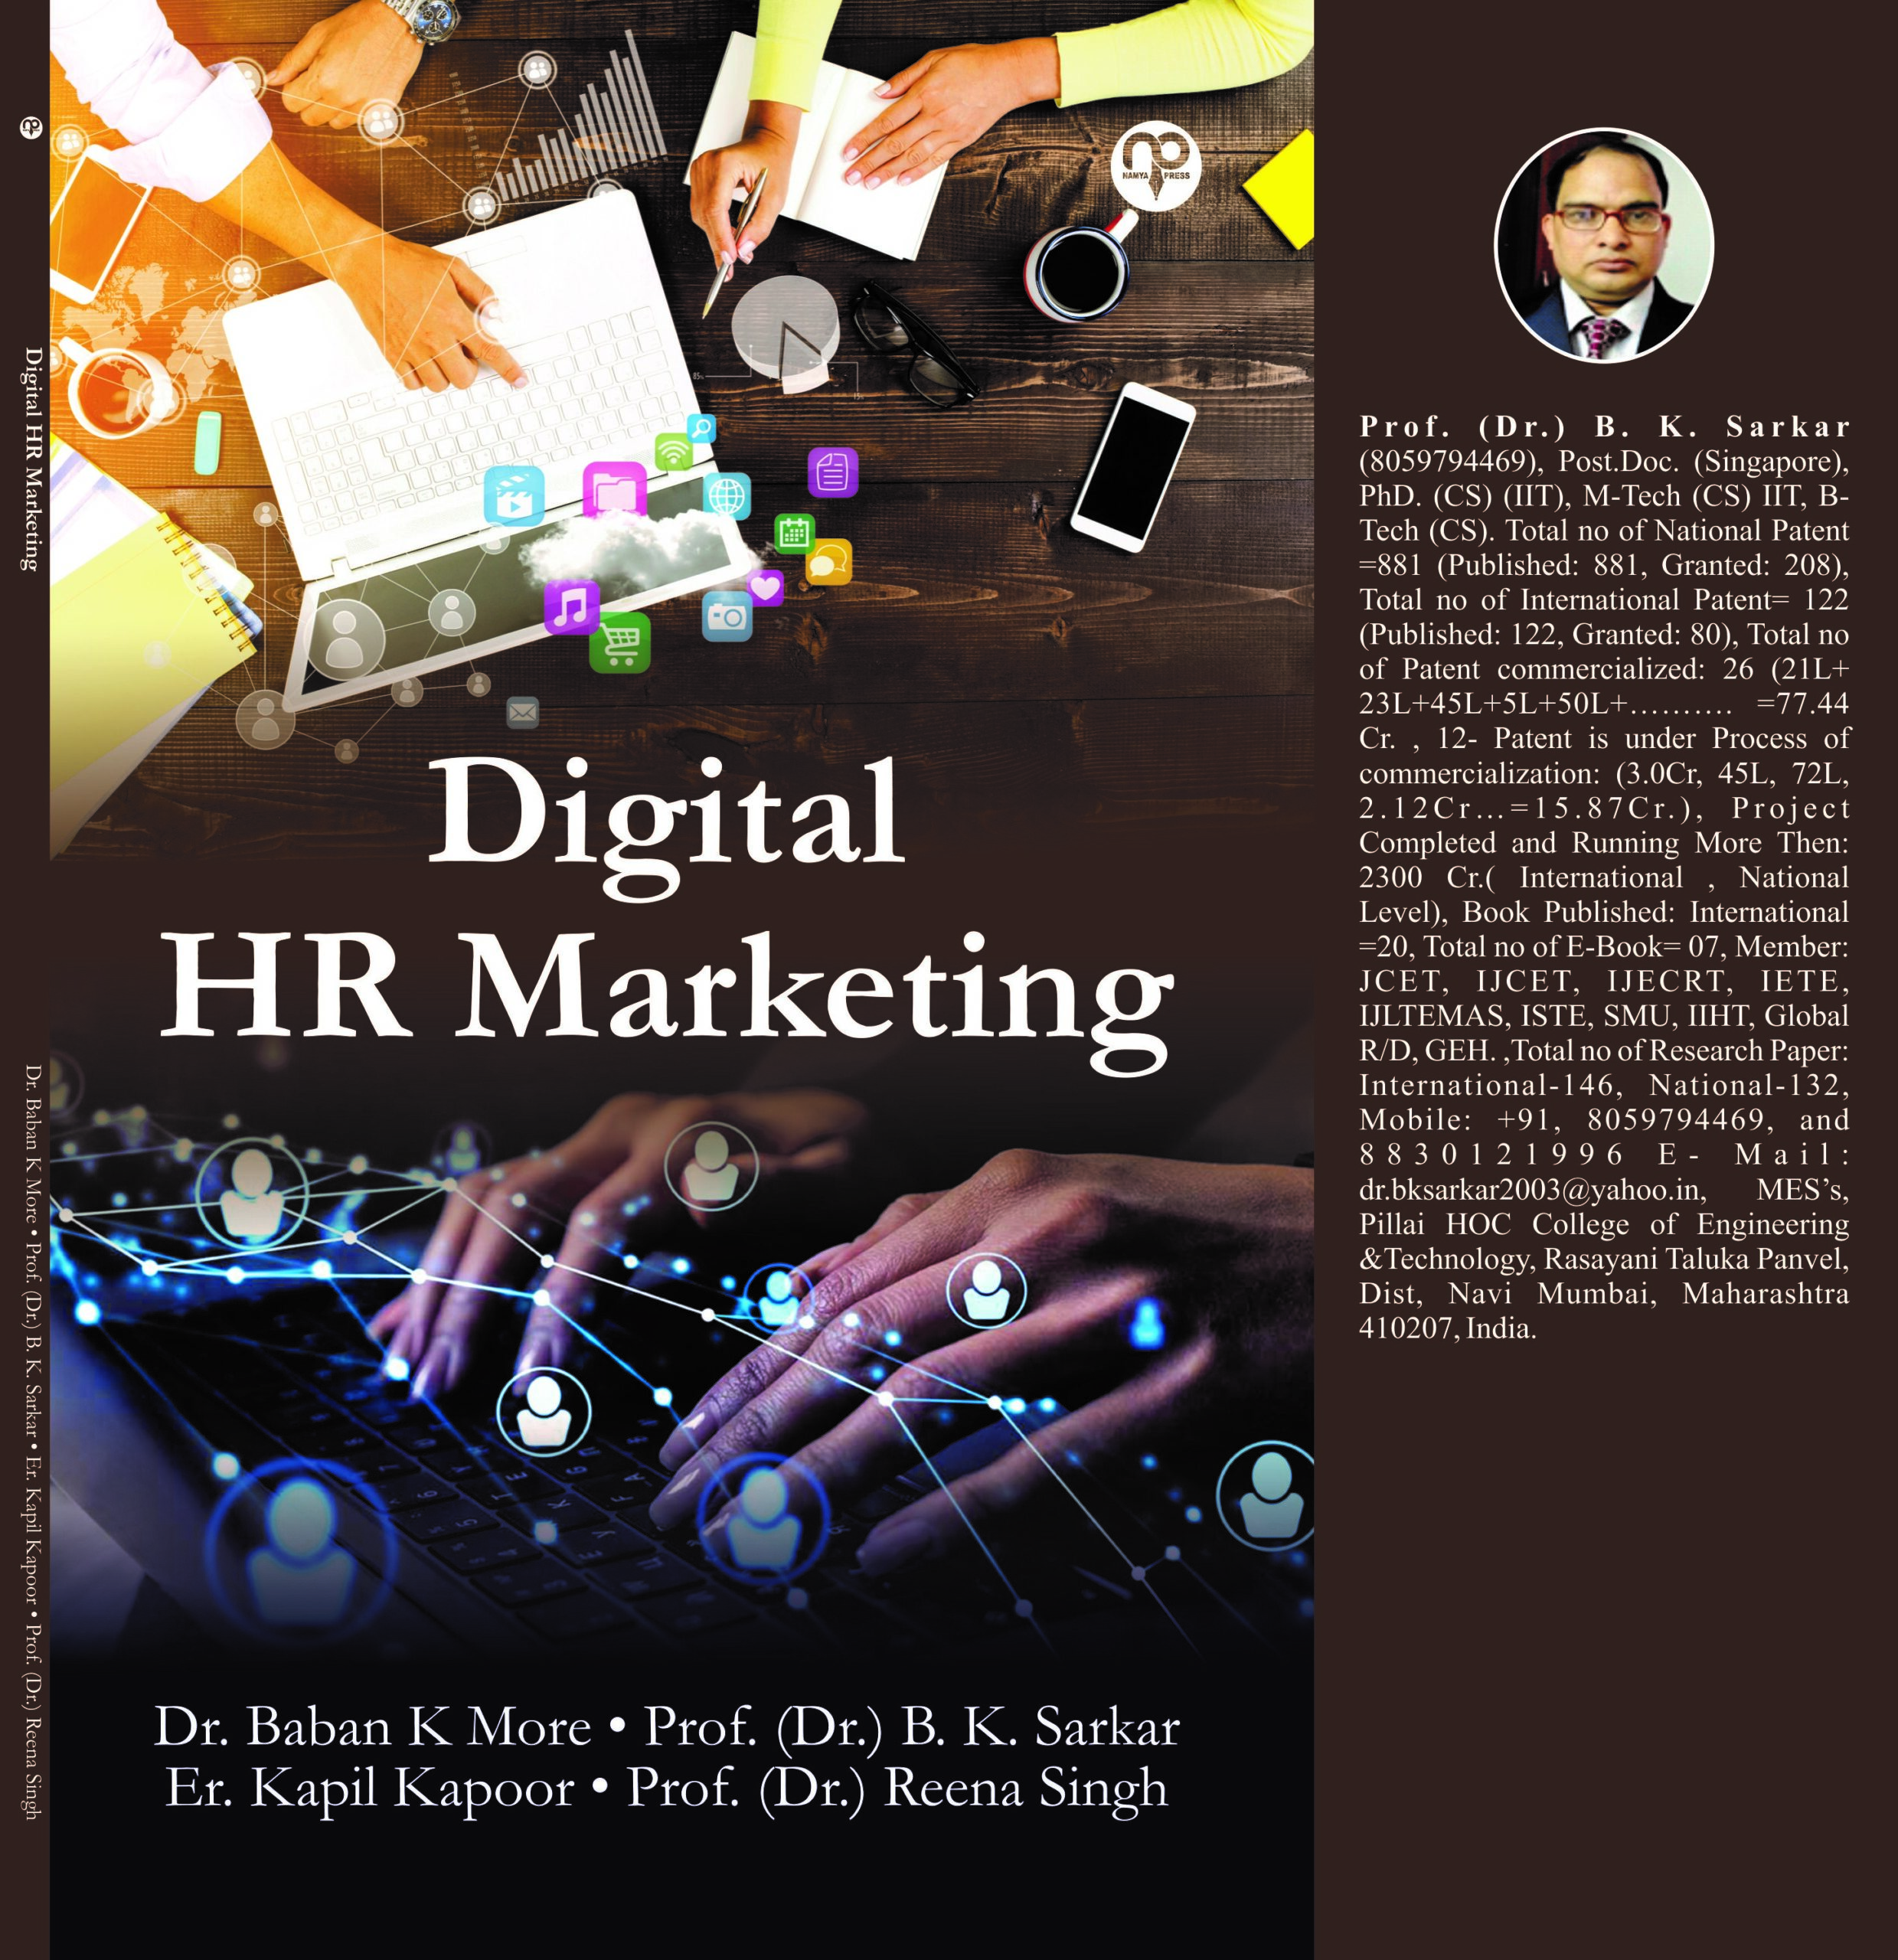 Digital HR Marketing